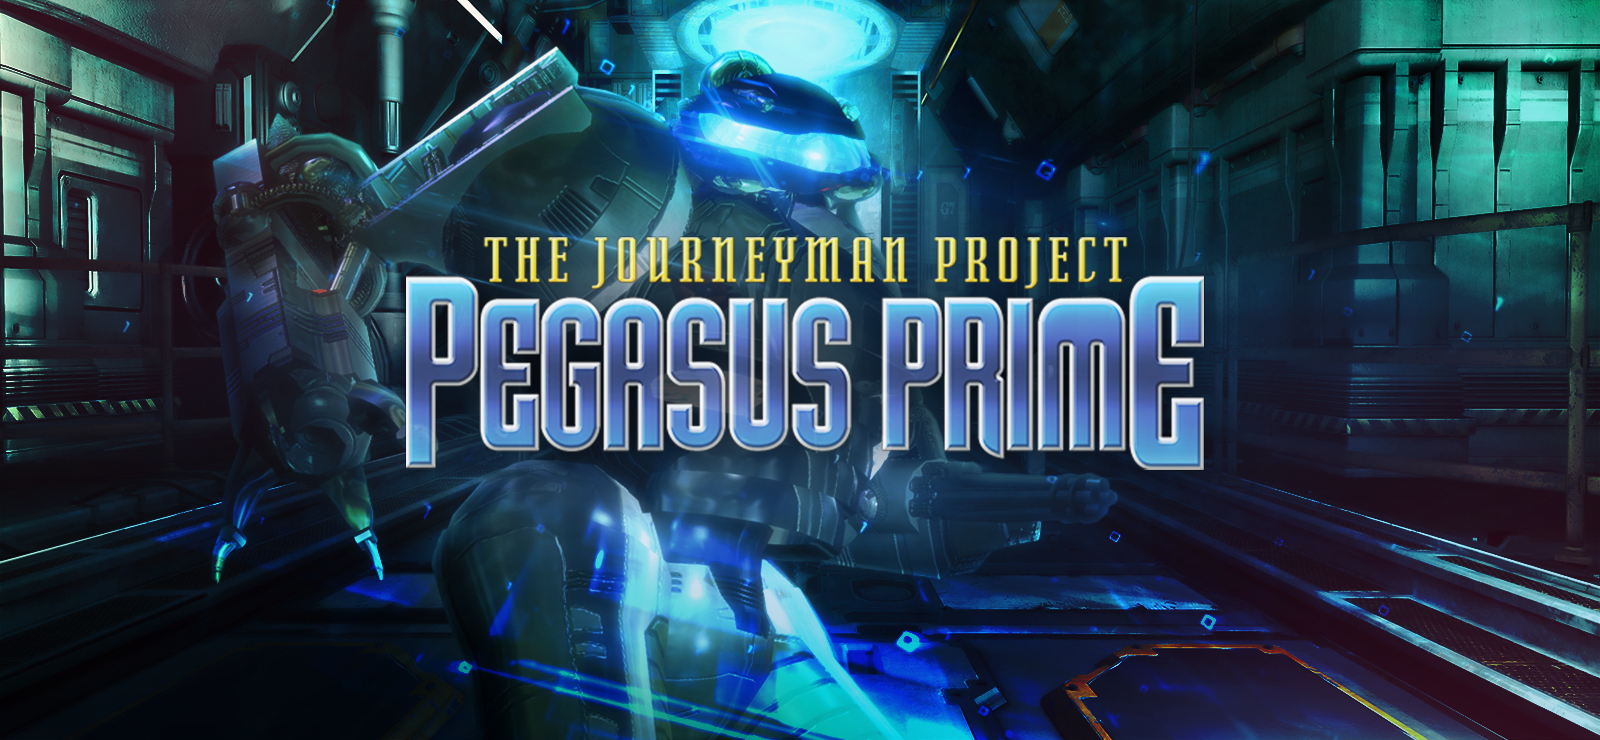 The Journeyman Project 1: Pegasus Prime